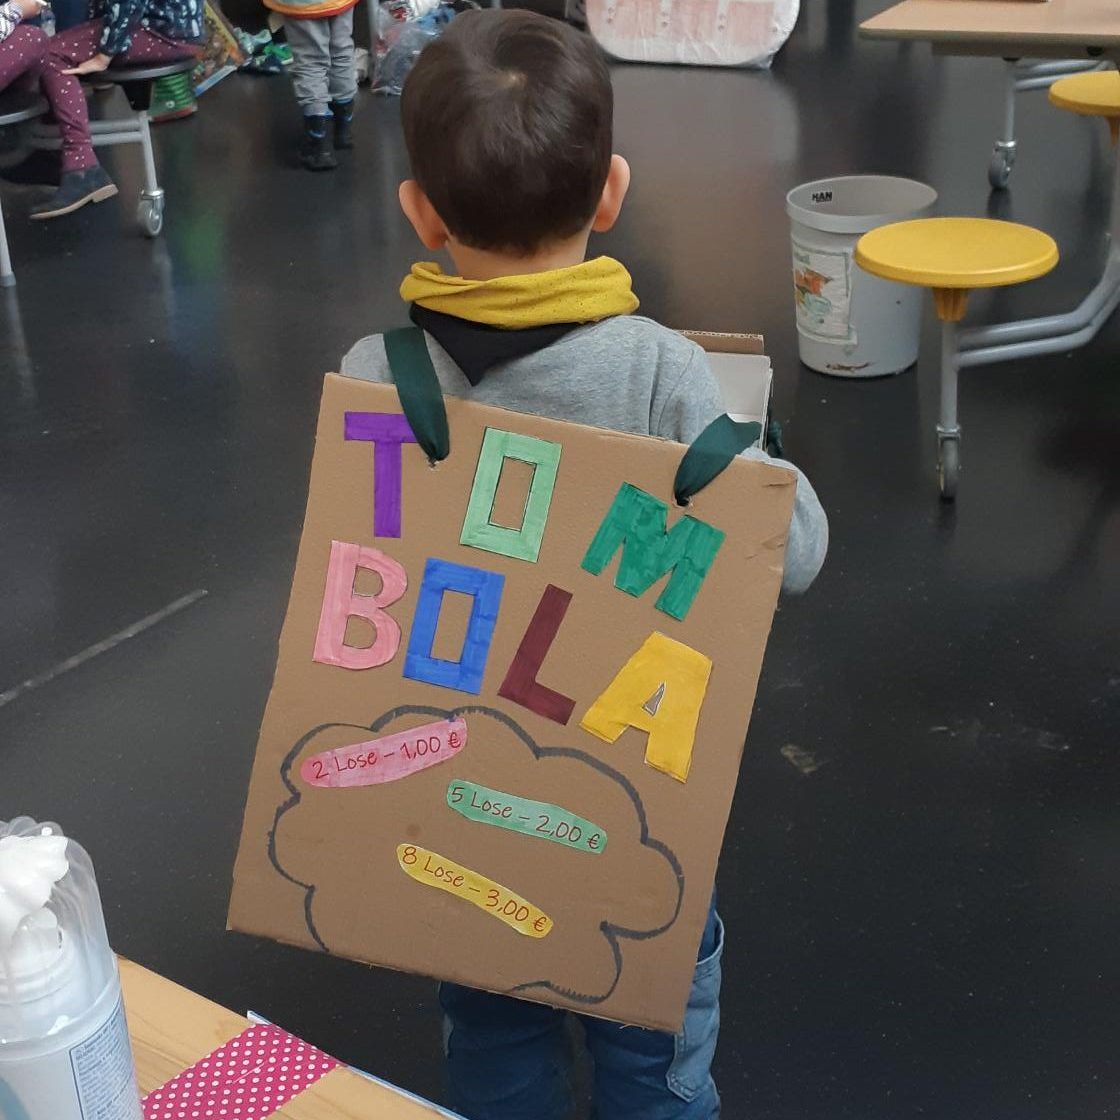 Kind mit Schild auf dem "Tombola" steht.